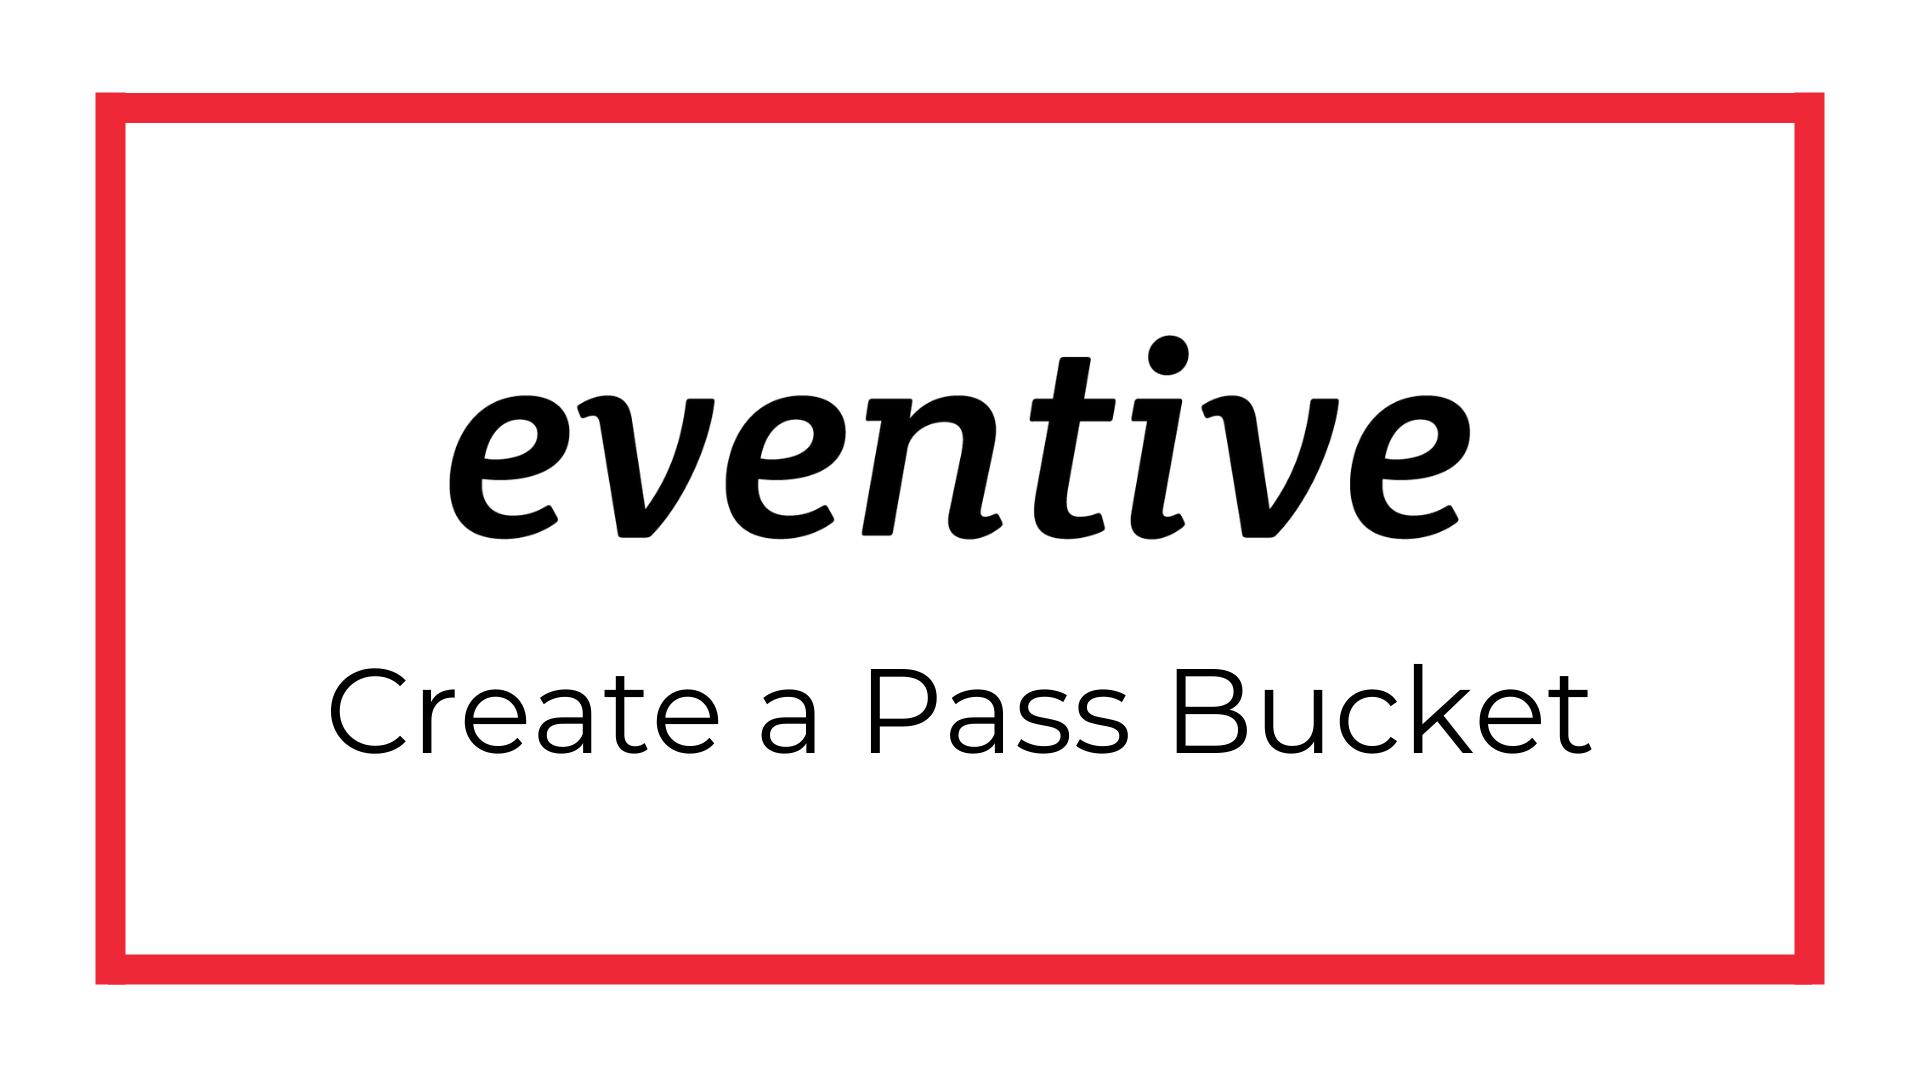 Create a Pass Bucket